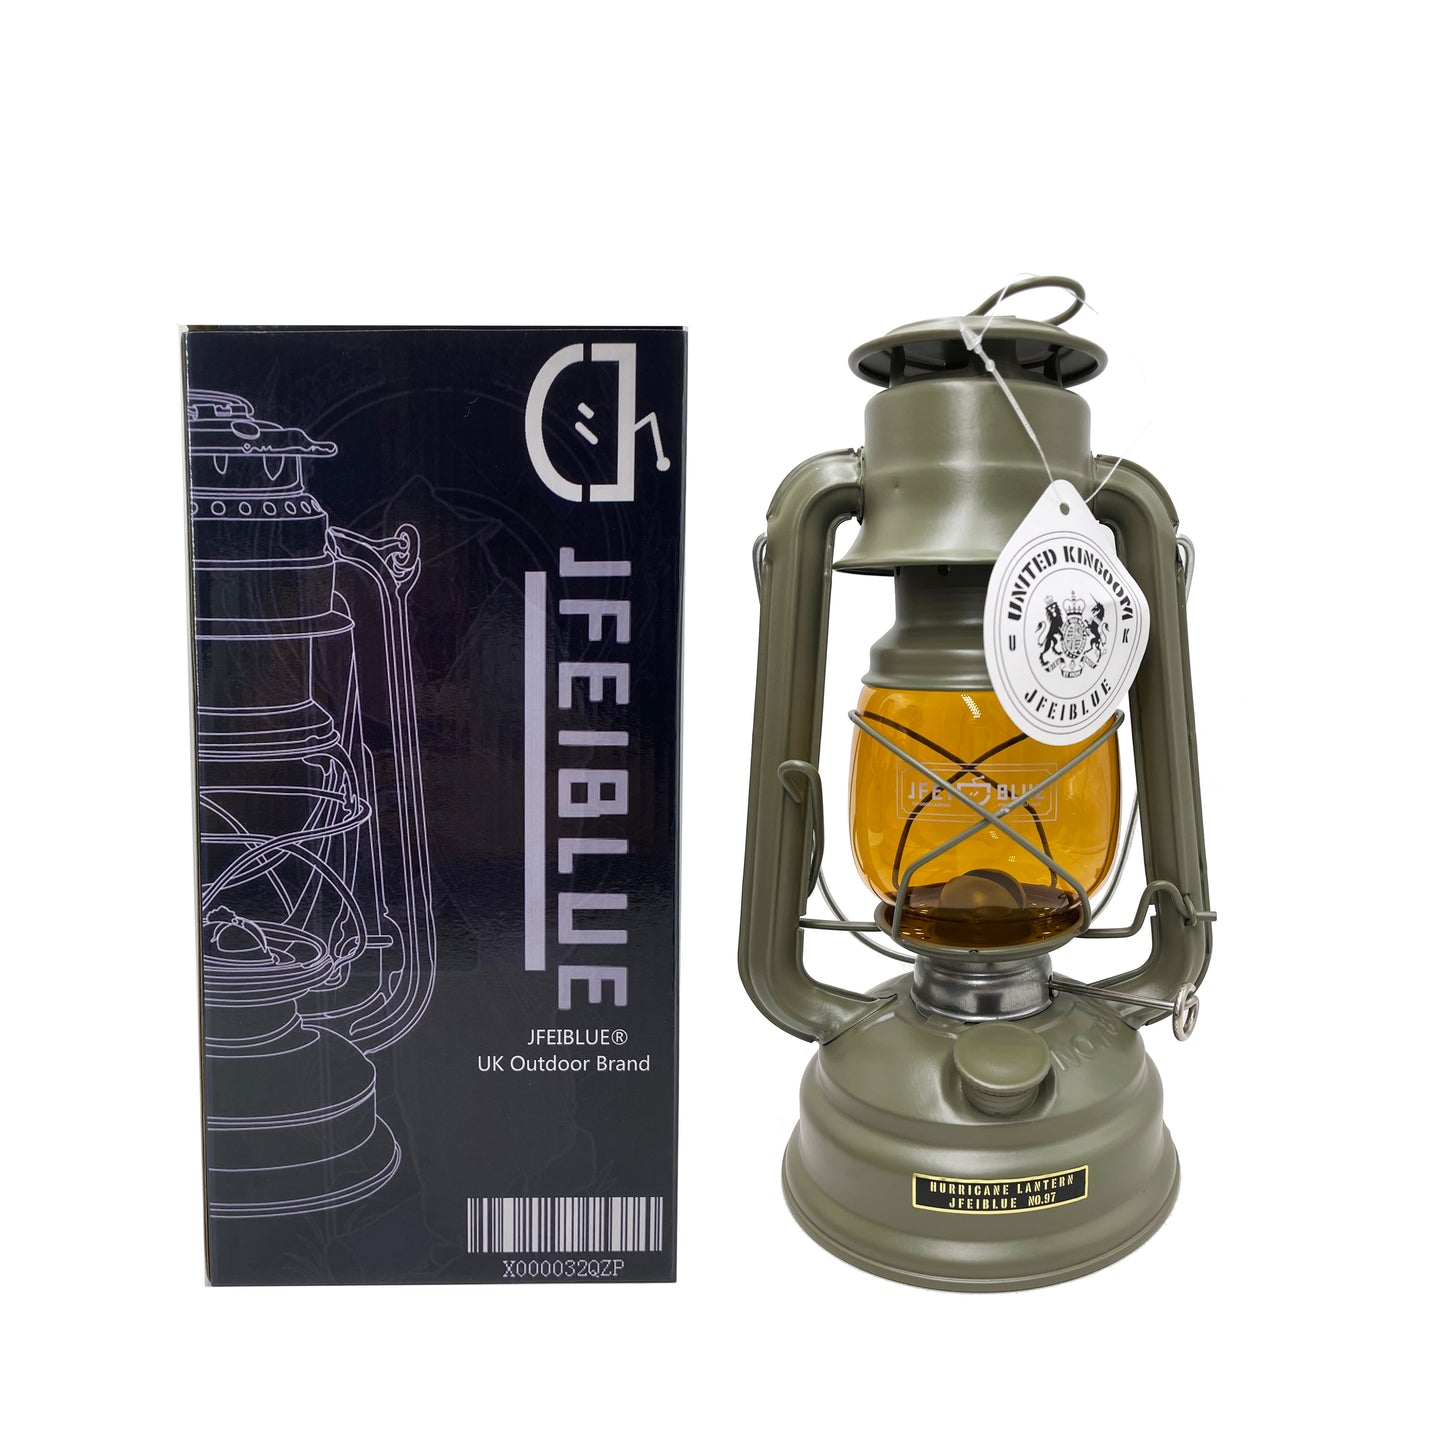 JFEIBLUE オイルランタン灯油ランタン ポータブル照明ランタン アウトドア キャンプ ハンドランタン ビンテージ オイルランタン 灯籠